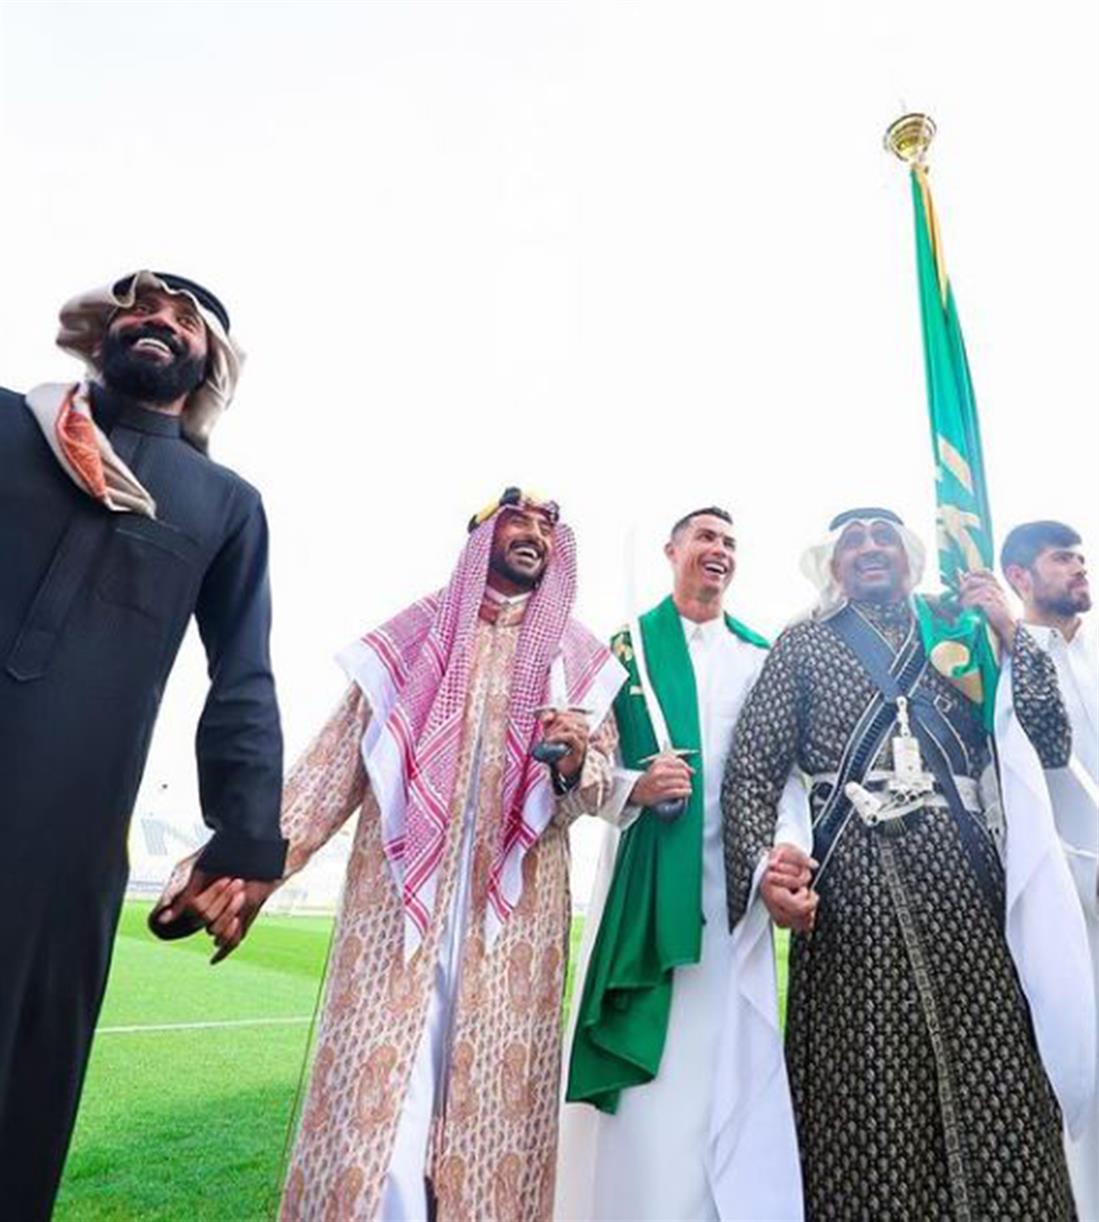 Ρονάλντο - παραδοσιακή ενδυμασία Σαουδικής Αραβίας